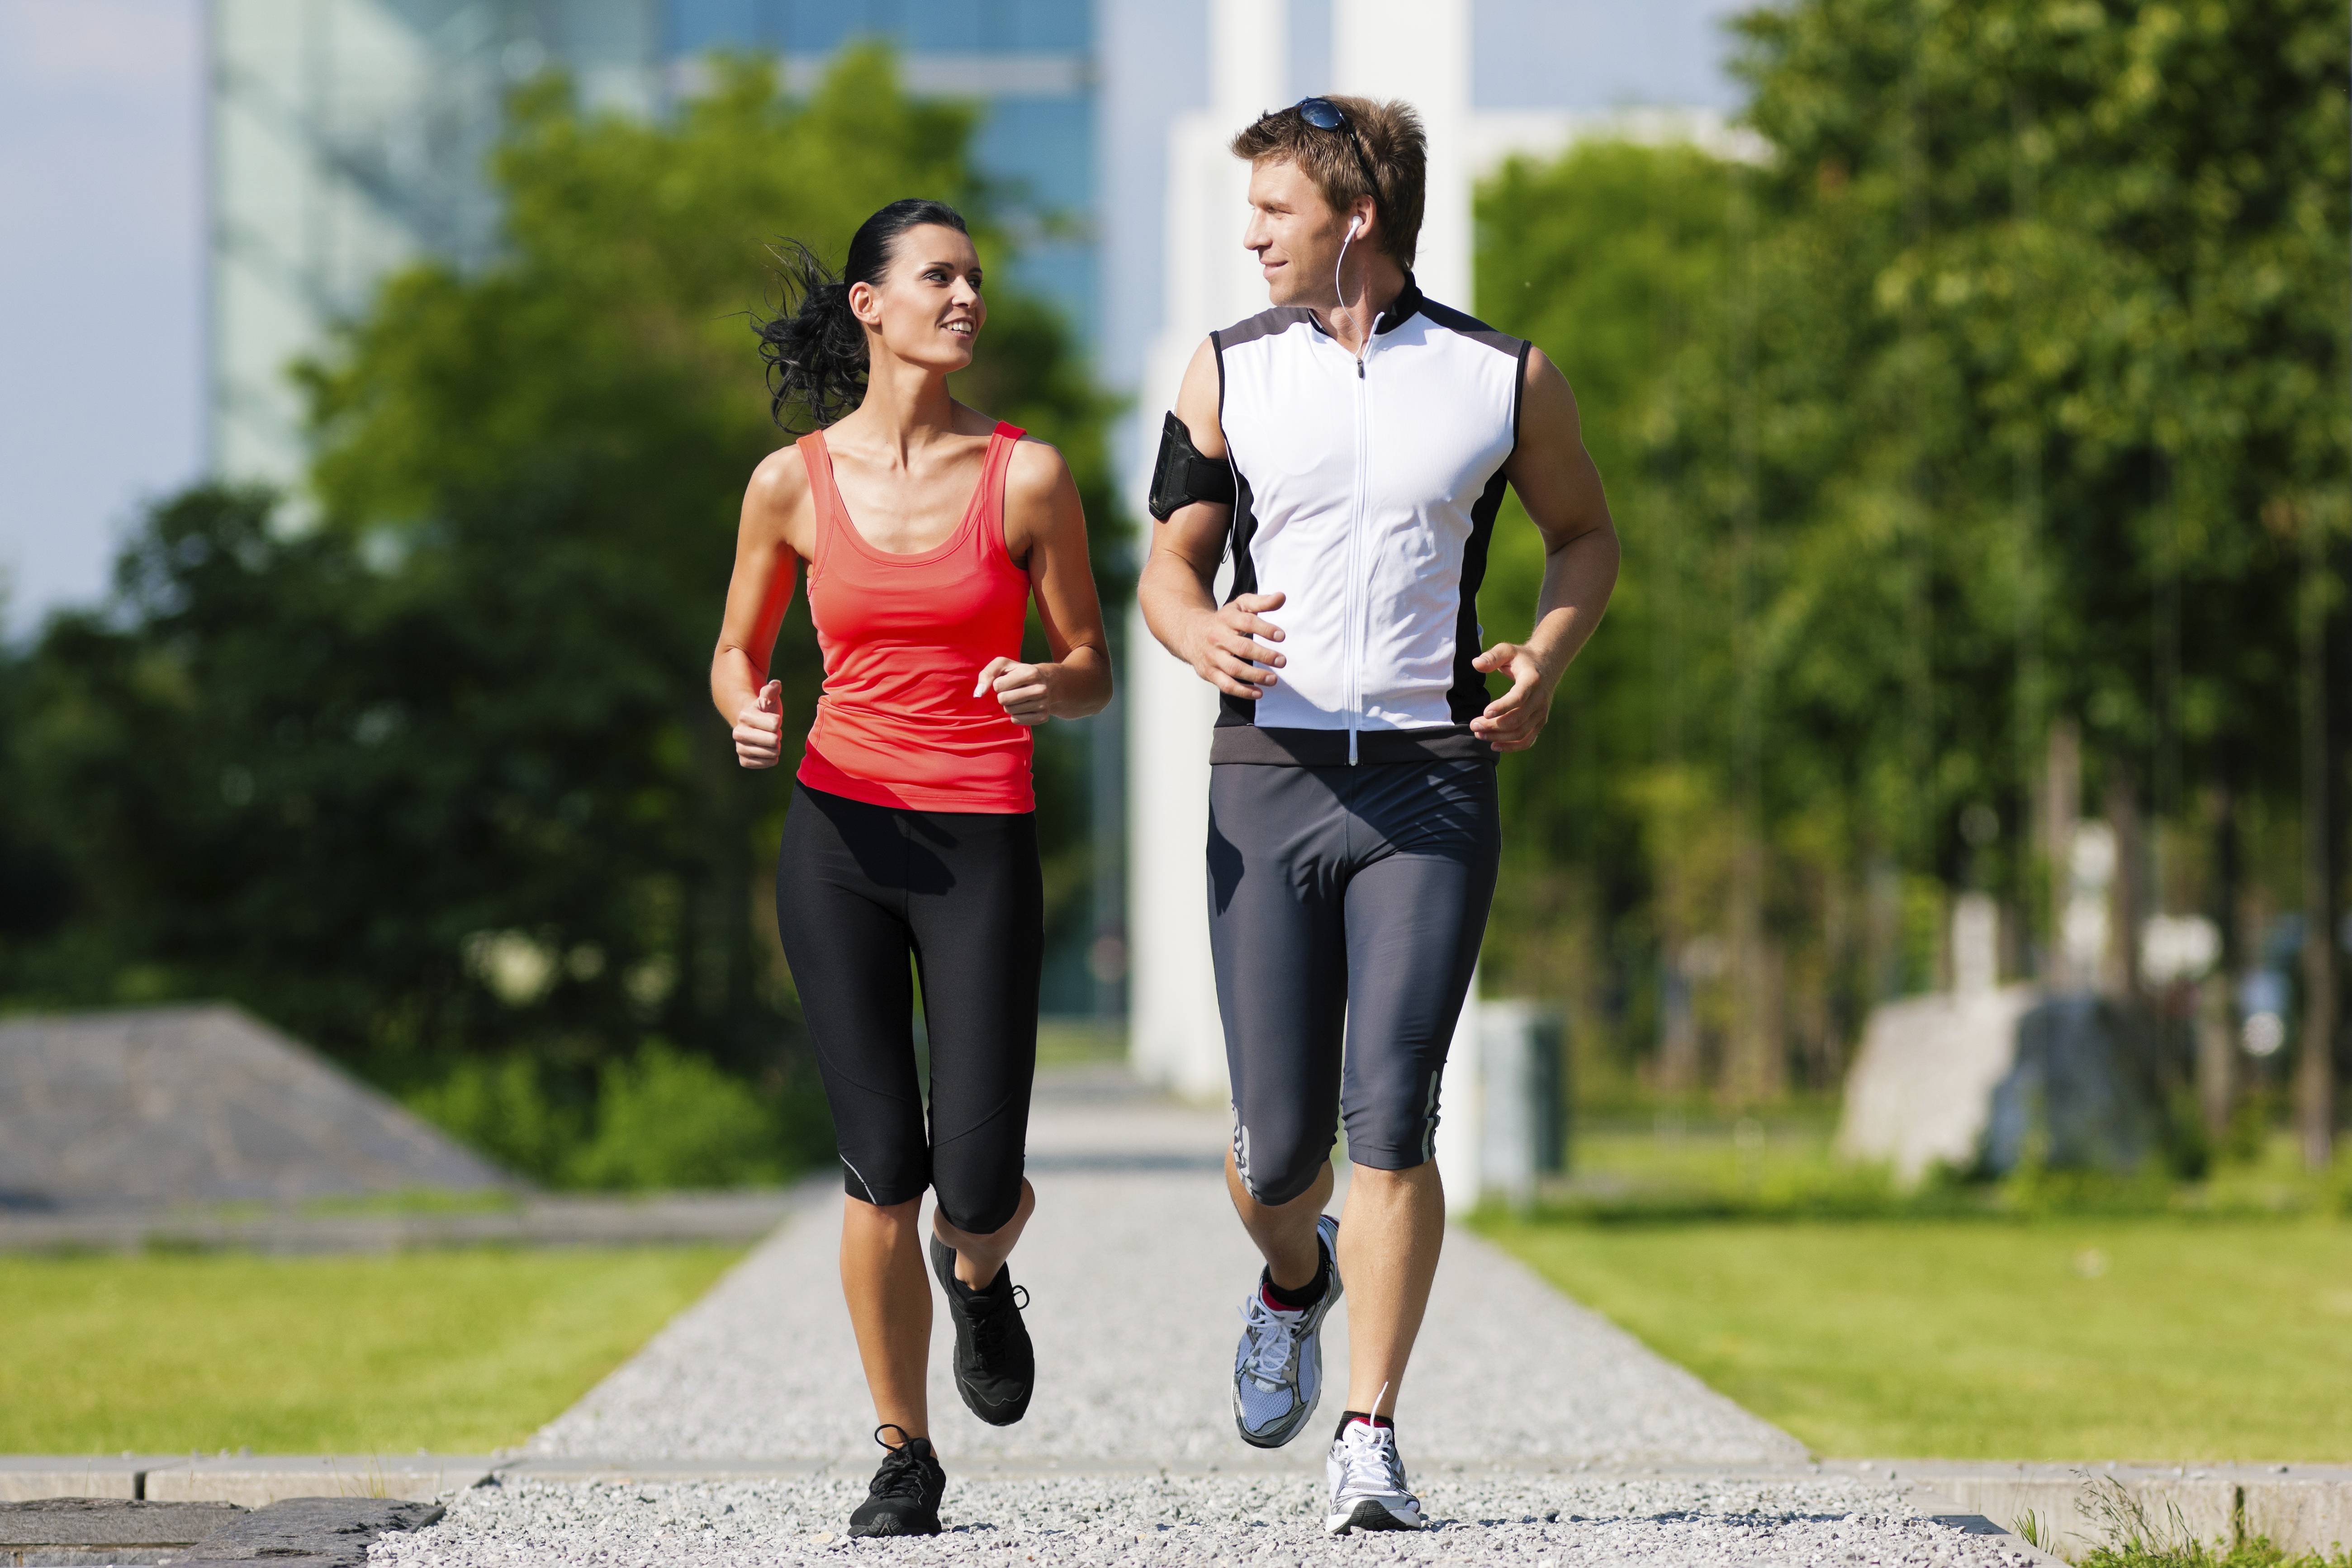 Бег для похудения трусцой: помогает эффективно похудеть, можно ли с помощью обертывания, как средство влияет на пульс, до и после